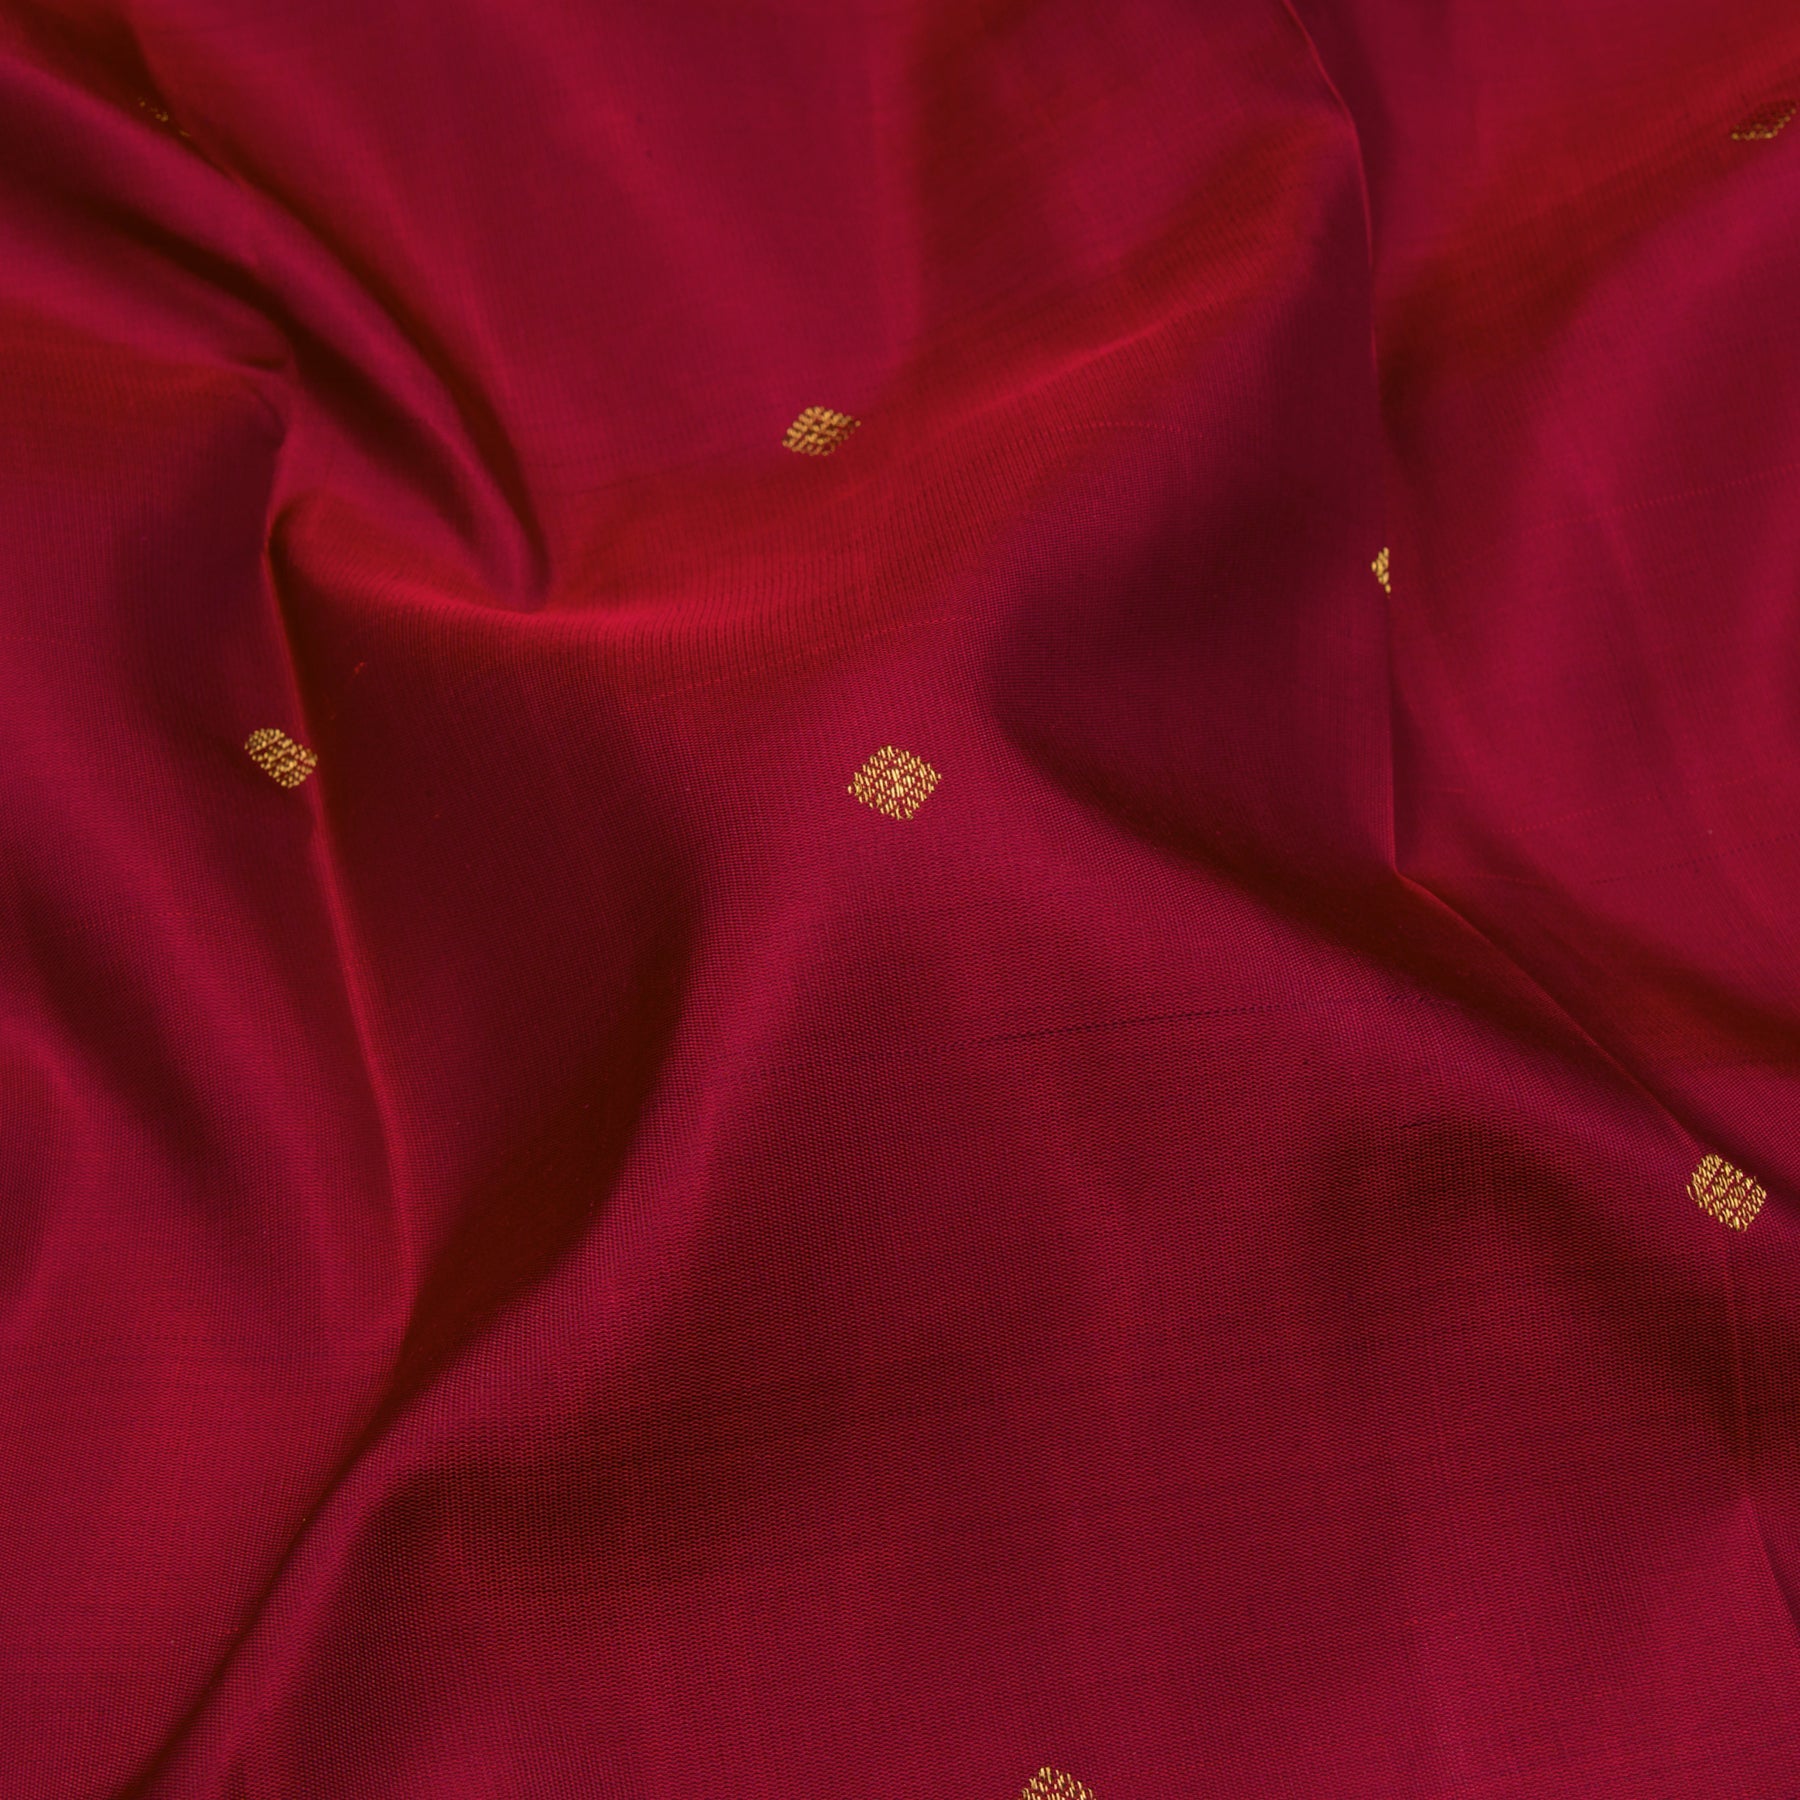 Kanakavalli Kanjivaram Silk Sari 23-595-HS001-12132 - Fabric view